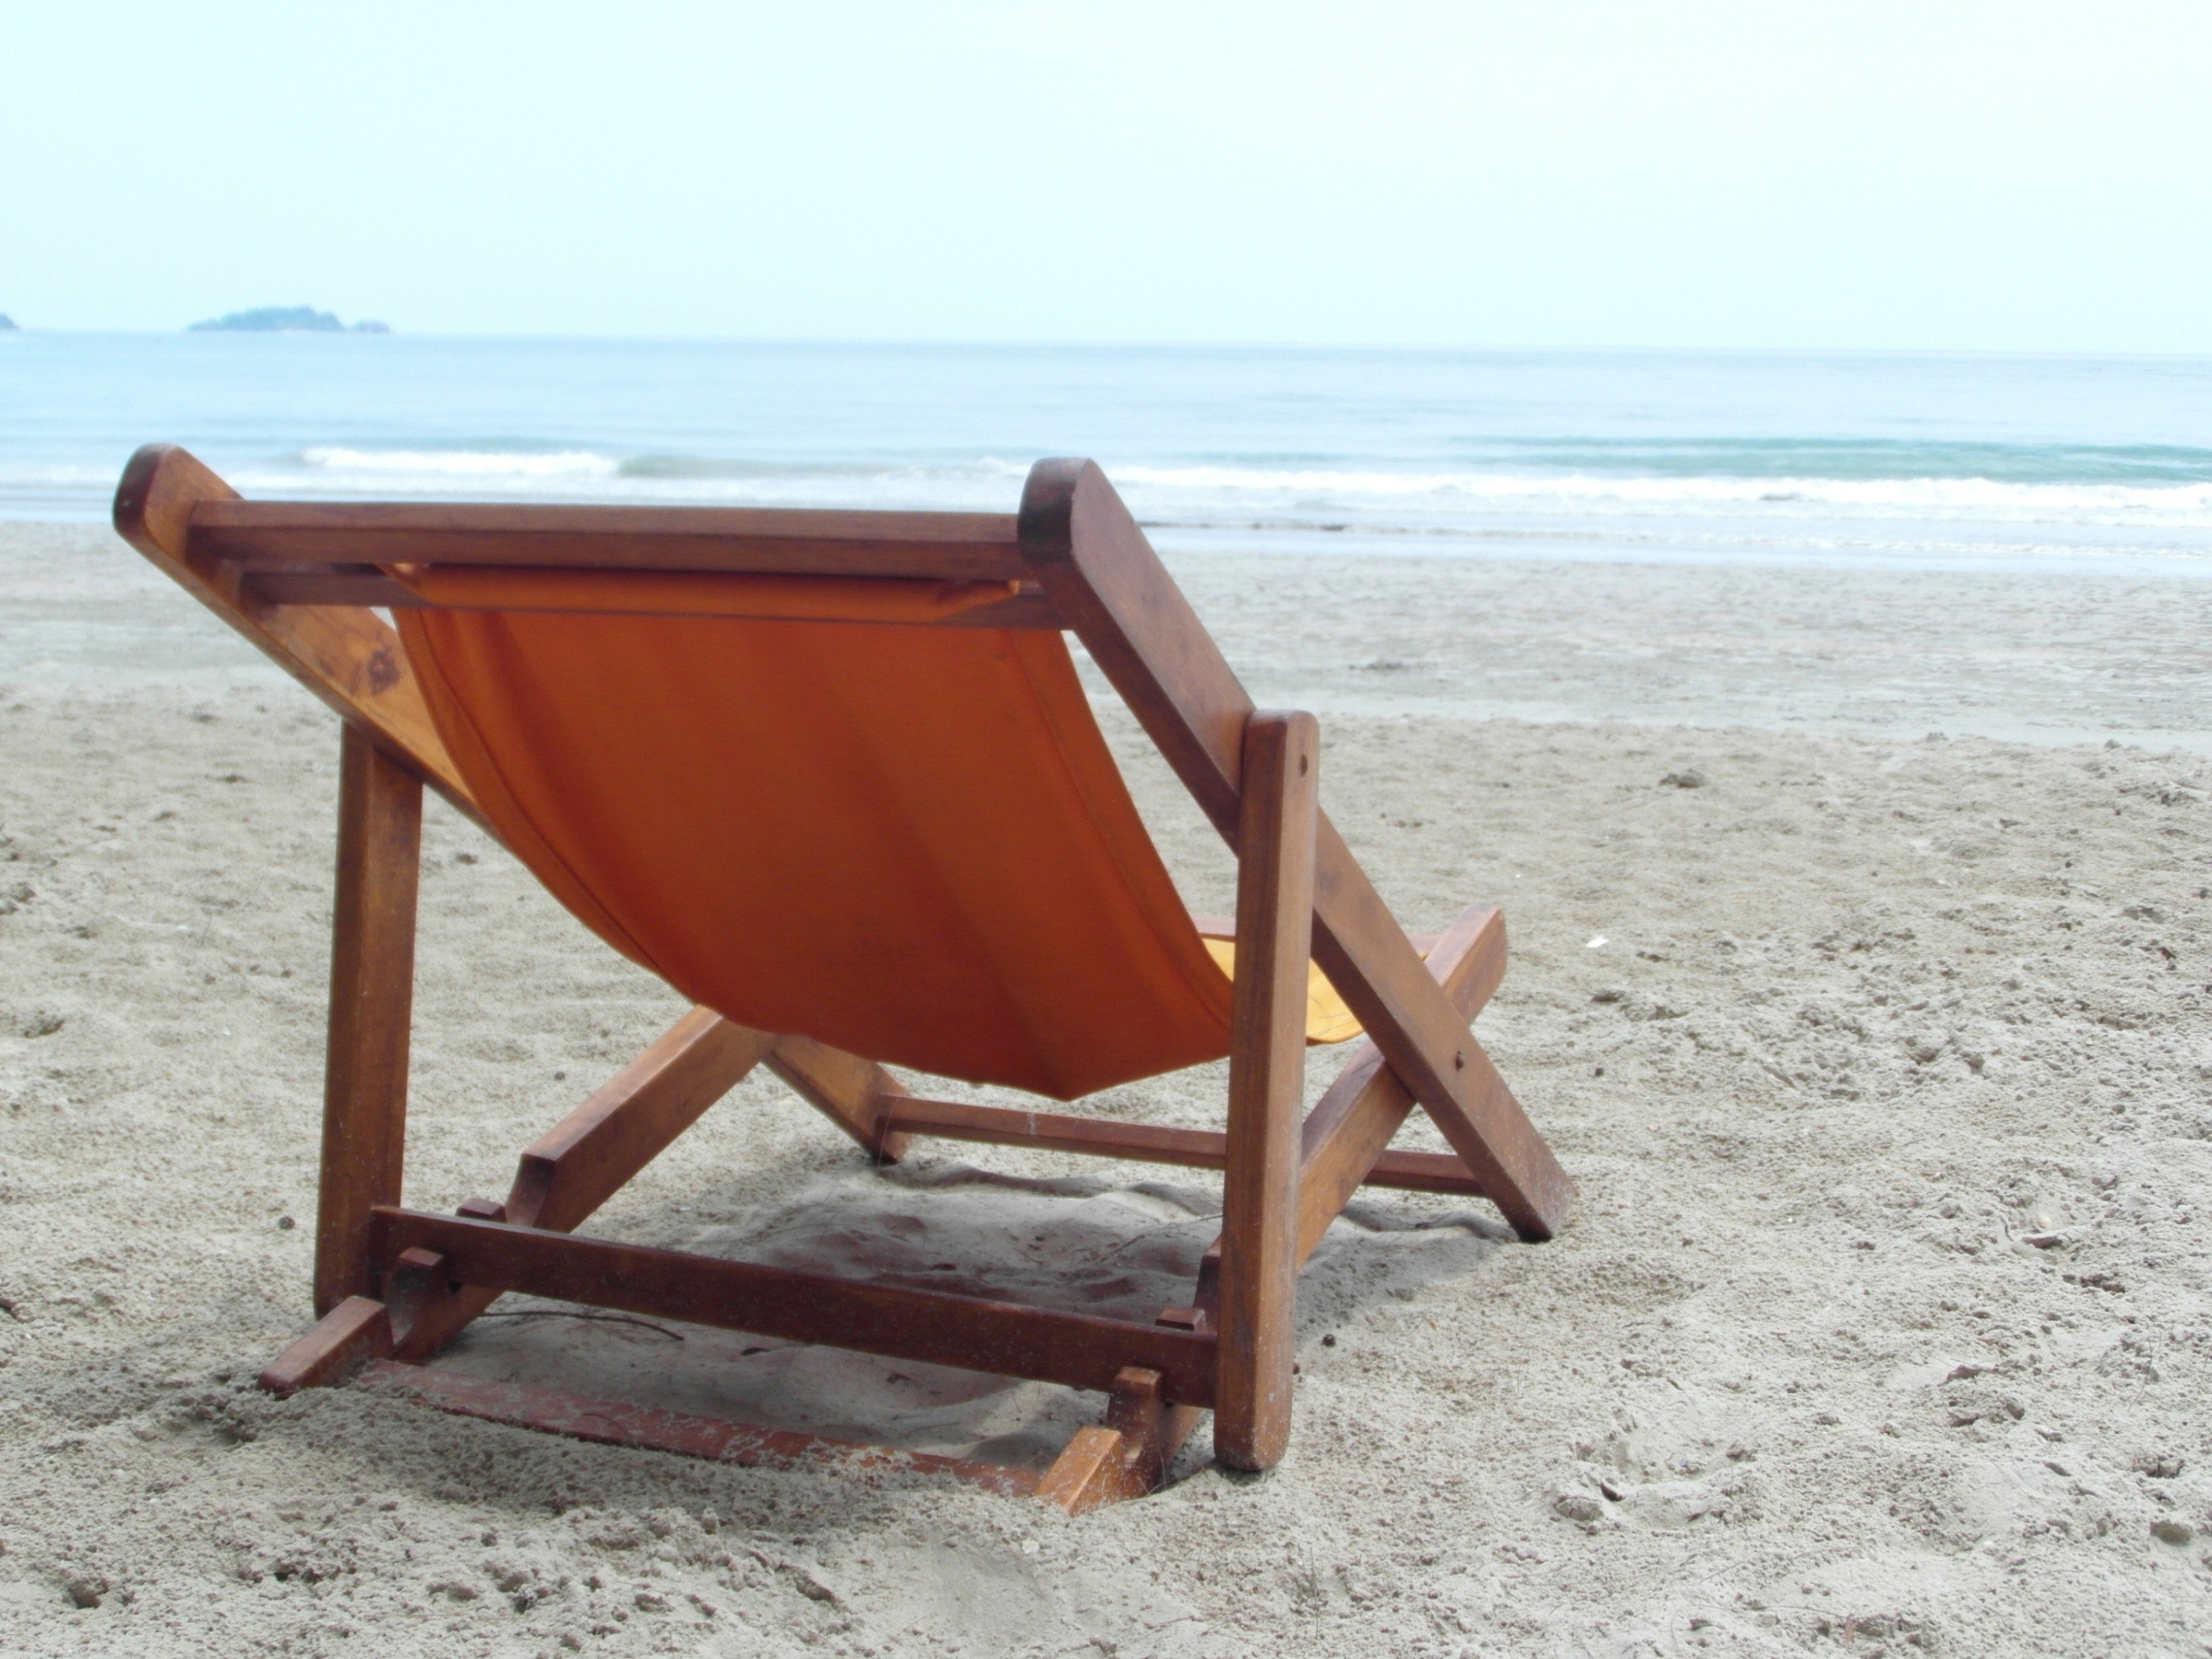 Deckchair on an empty beach photo